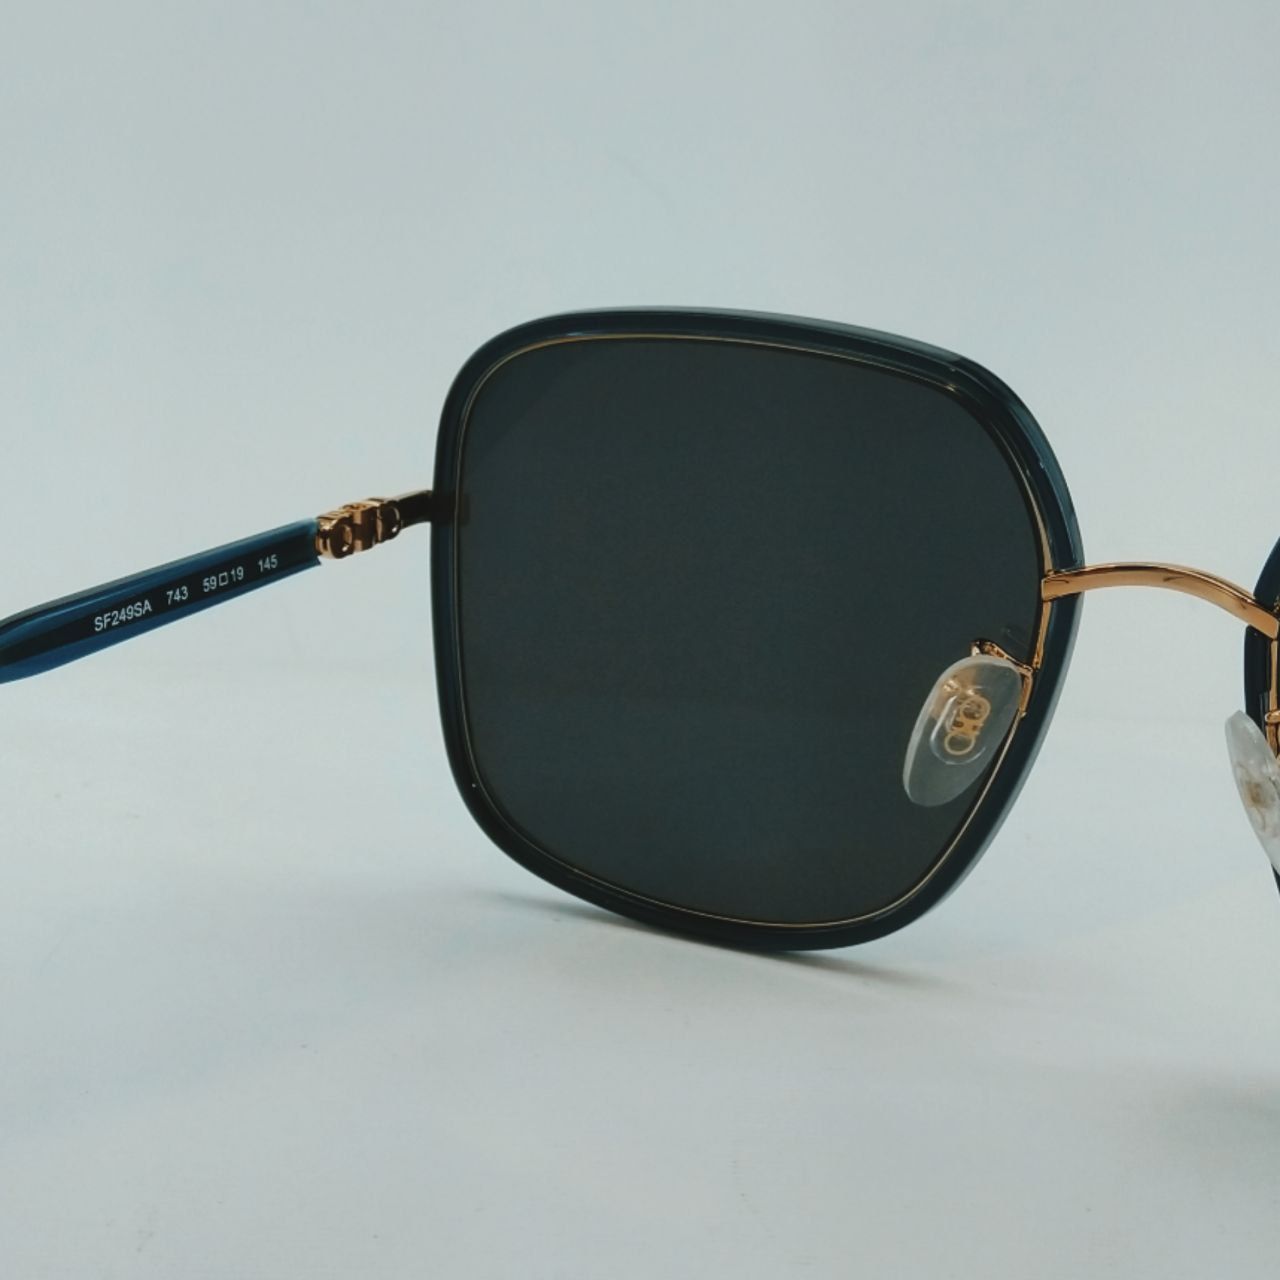 عینک آفتابی زنانه سالواتوره فراگامو مدل SF249SA 743 -  - 5